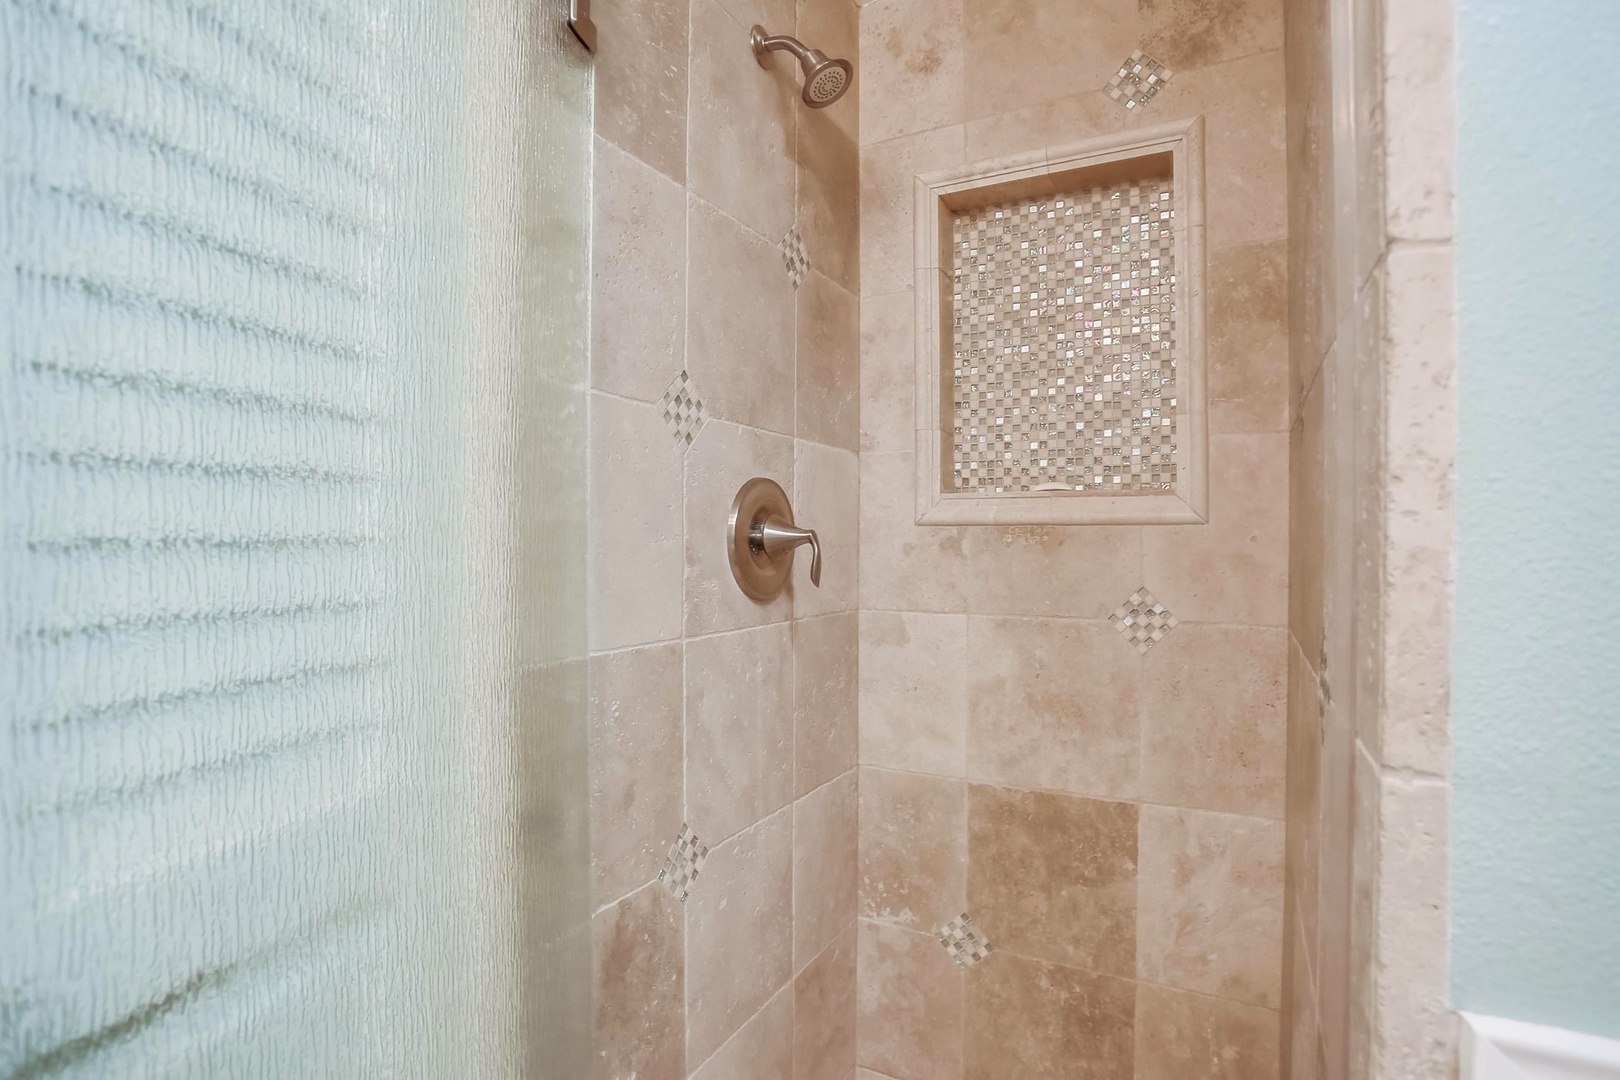 Travertine shower in hall bath